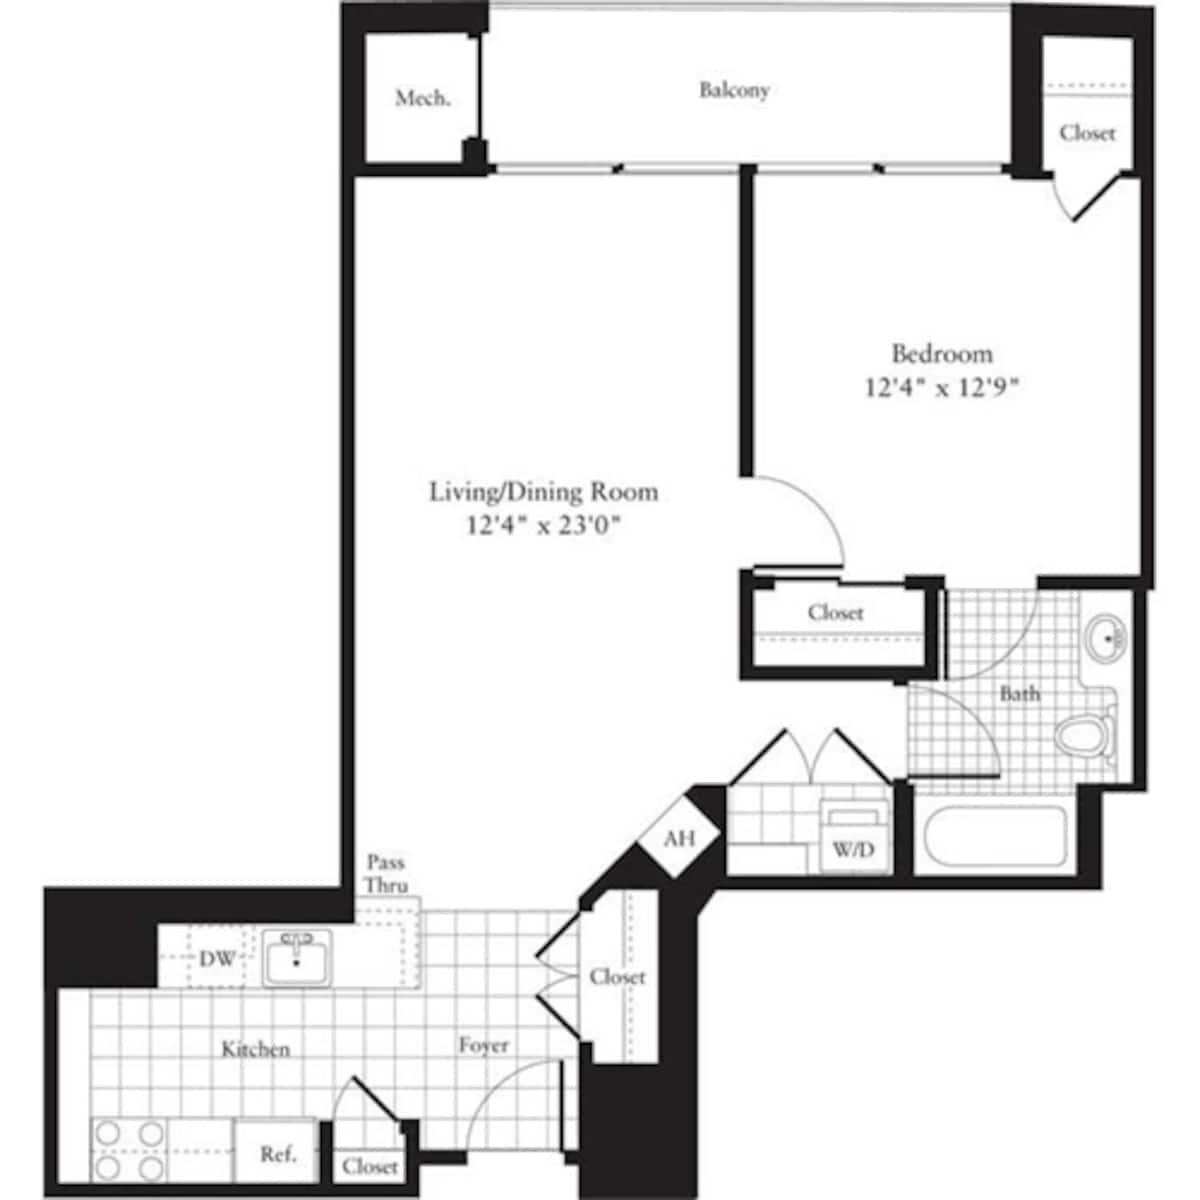 Floorplan diagram for 1 Bedroom H, showing 1 bedroom